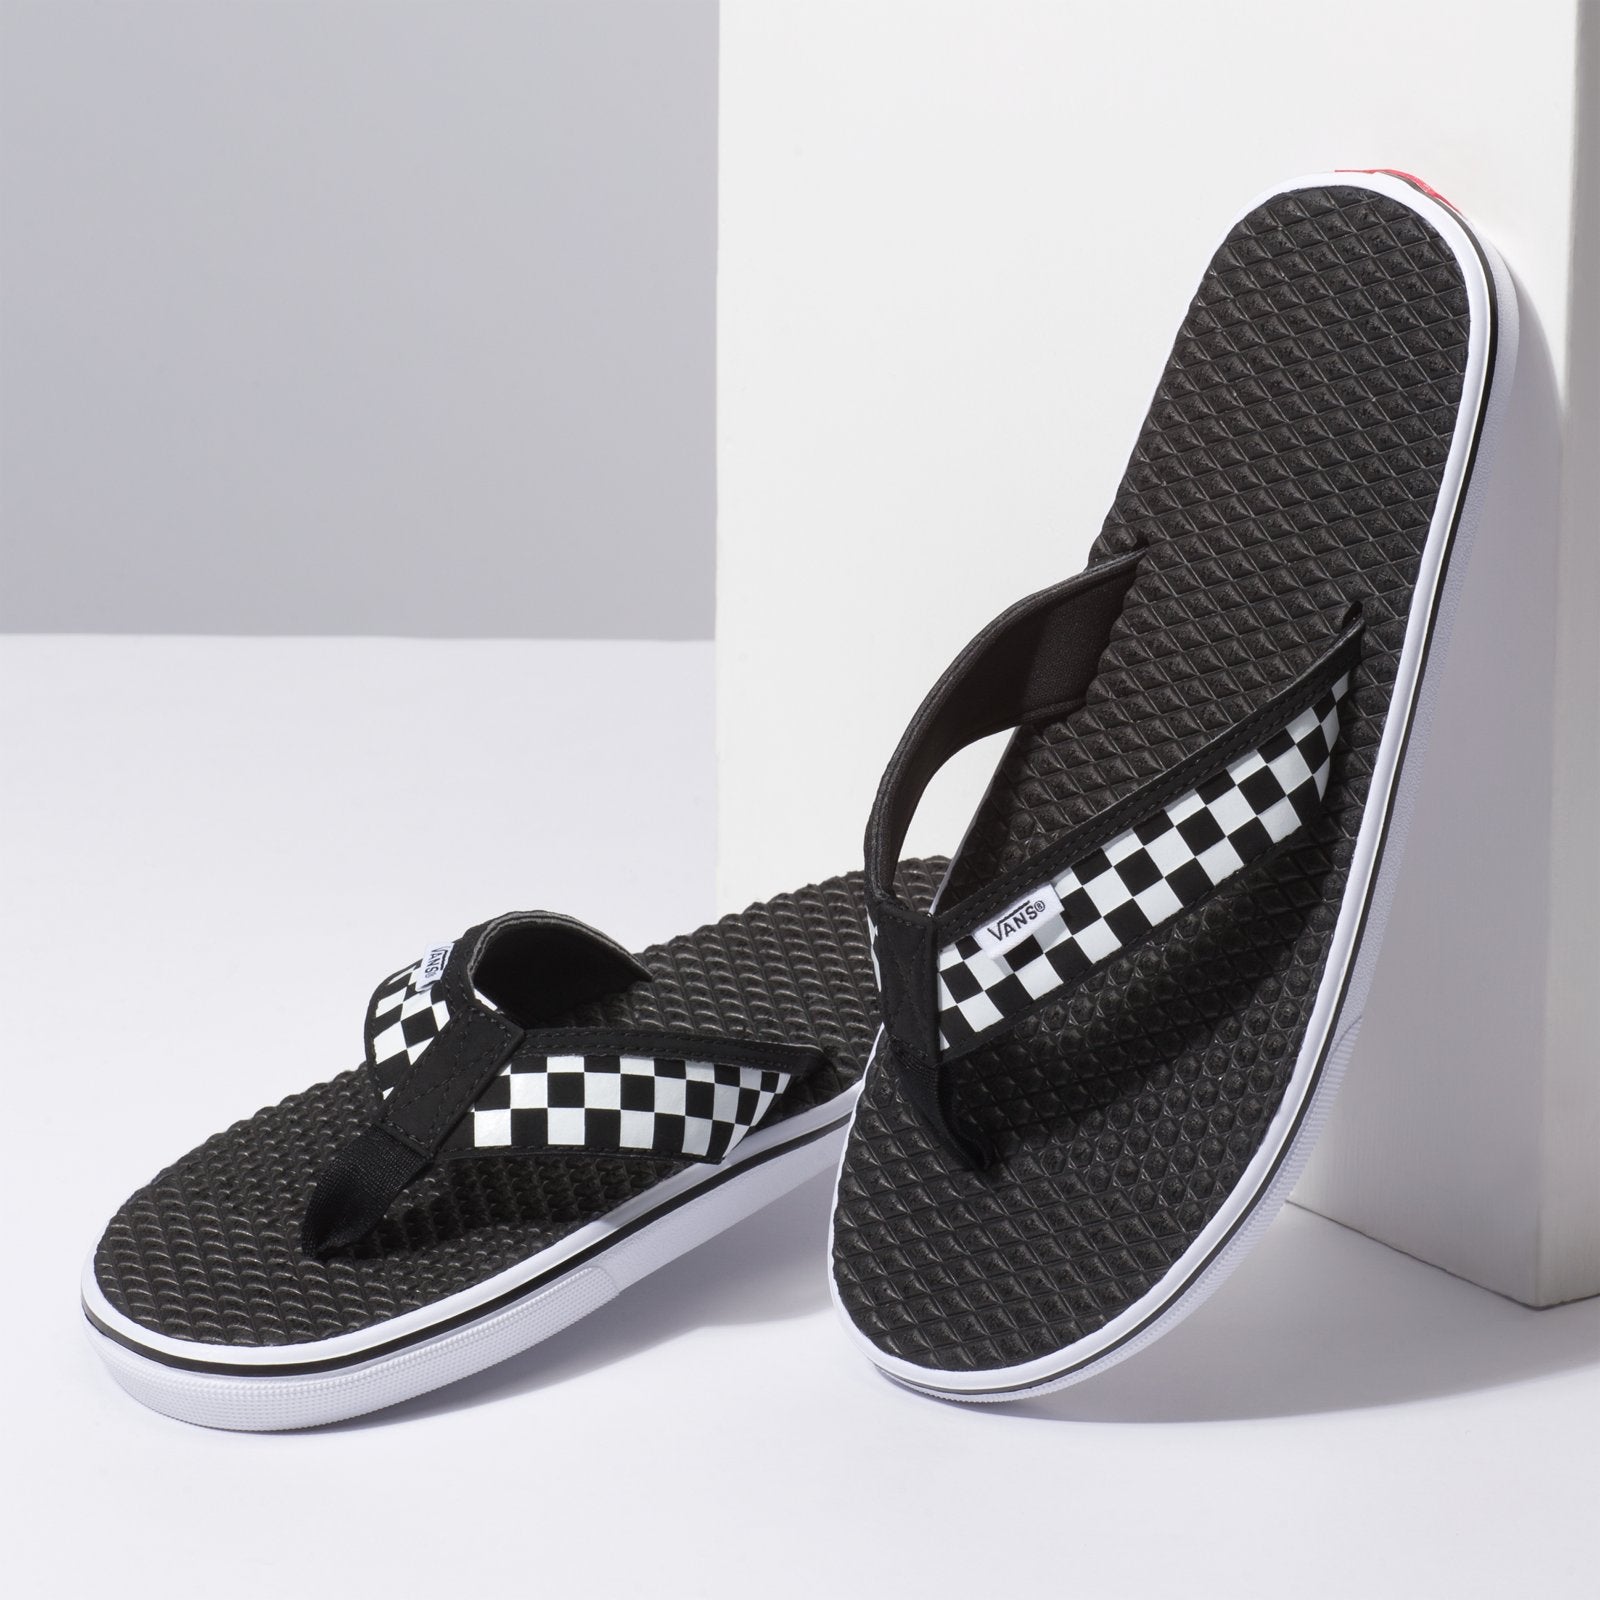 La Costa Lite Sandal - Black/Checkerboard - PK